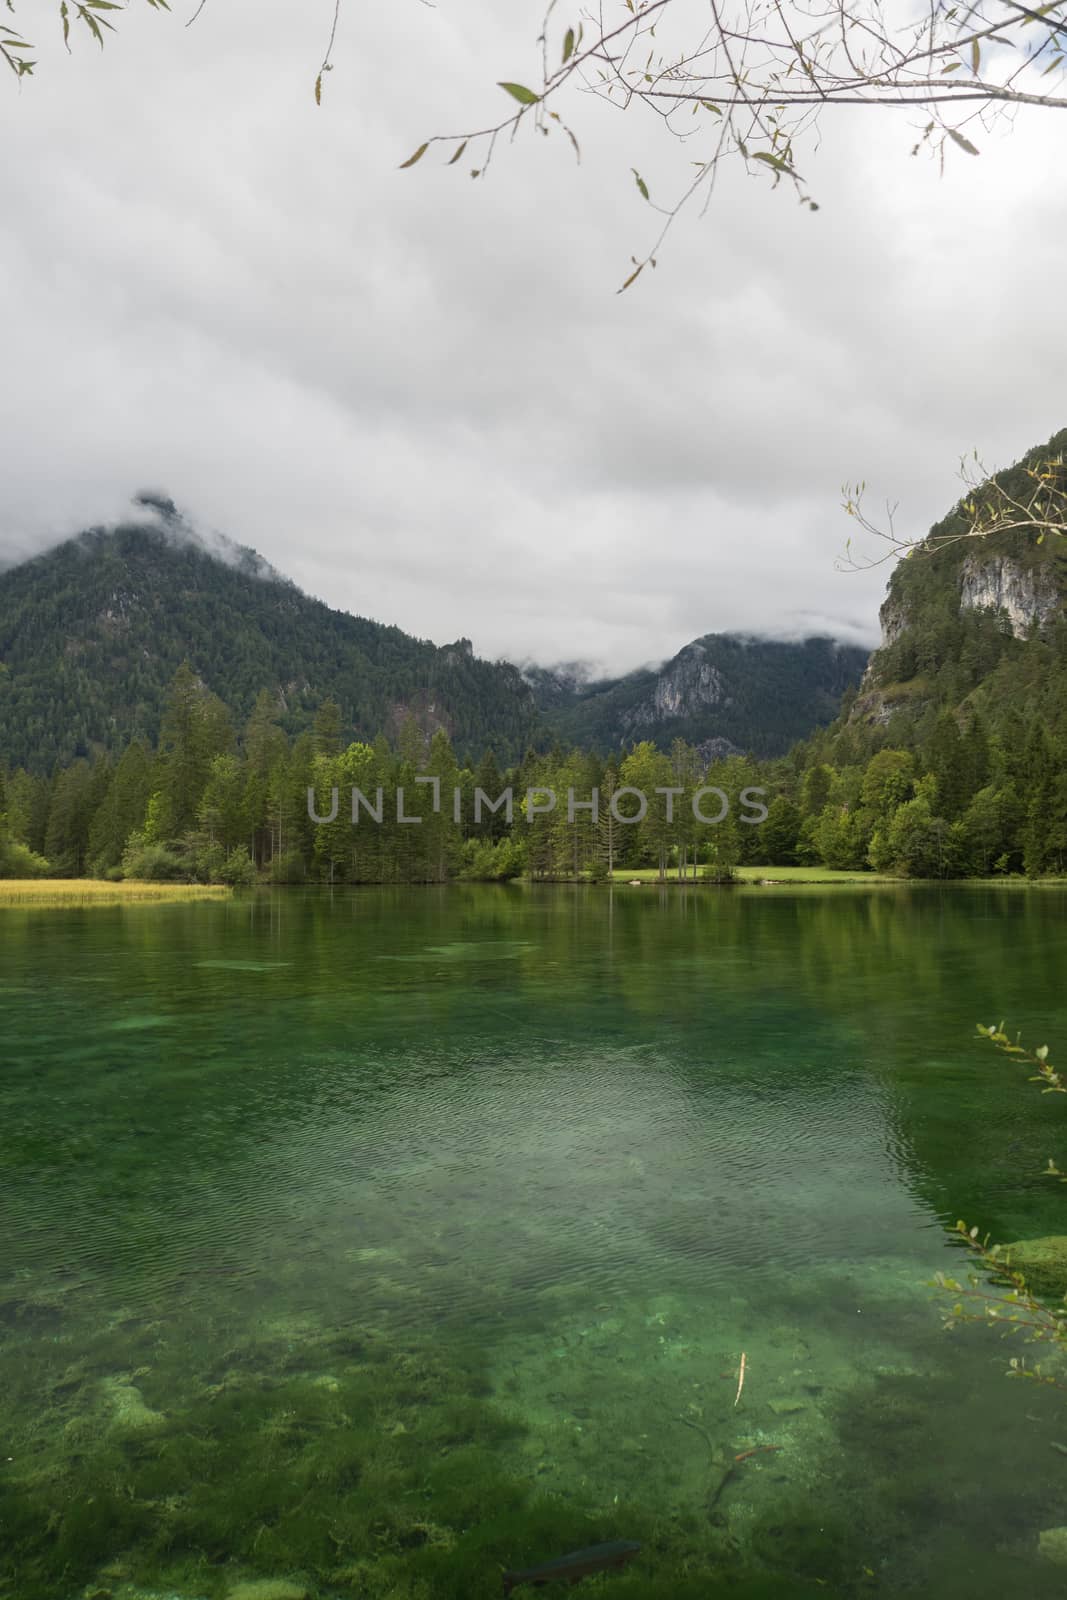 Schiederweiher, beautiful lake in Austria near Hinterstoder